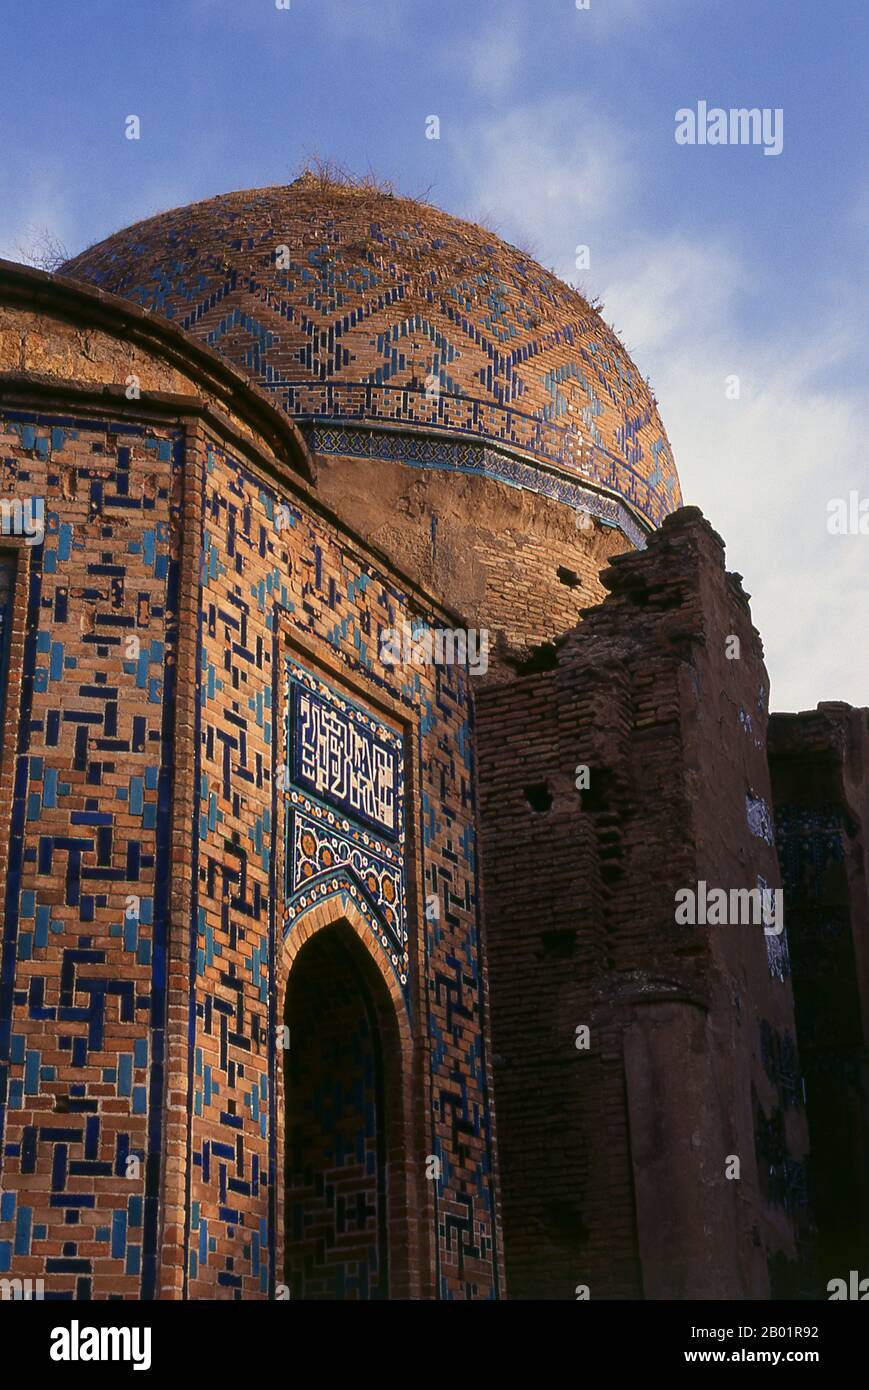 Usbekistan: Kuppel über dem Grab von Kussam ibn Abbas, Shah-i-Zinda, Samarkand. Shah-i-Zinda („der lebende König“) ist eine Nekropole im nordöstlichen Teil von Samarkand. Das Shah-i-Zinda Ensemble umfasst Mausoleen und andere rituelle Gebäude aus dem 9.-14. Und 19. Jahrhundert. Der Name Shah-i-Zinda steht im Zusammenhang mit der Legende, dass Kusam ibn Abbas, ein Cousin des Propheten Muhammad, hier begraben ist. Es wird angenommen, dass er mit der arabischen Invasion im 7. Jahrhundert nach Samarkand kam, um den Islam zu predigen. Populäre Legenden sagen, dass er von zoroastrischen Feueranbetern wegen seines Glaubens enthauptet wurde. Stockfoto